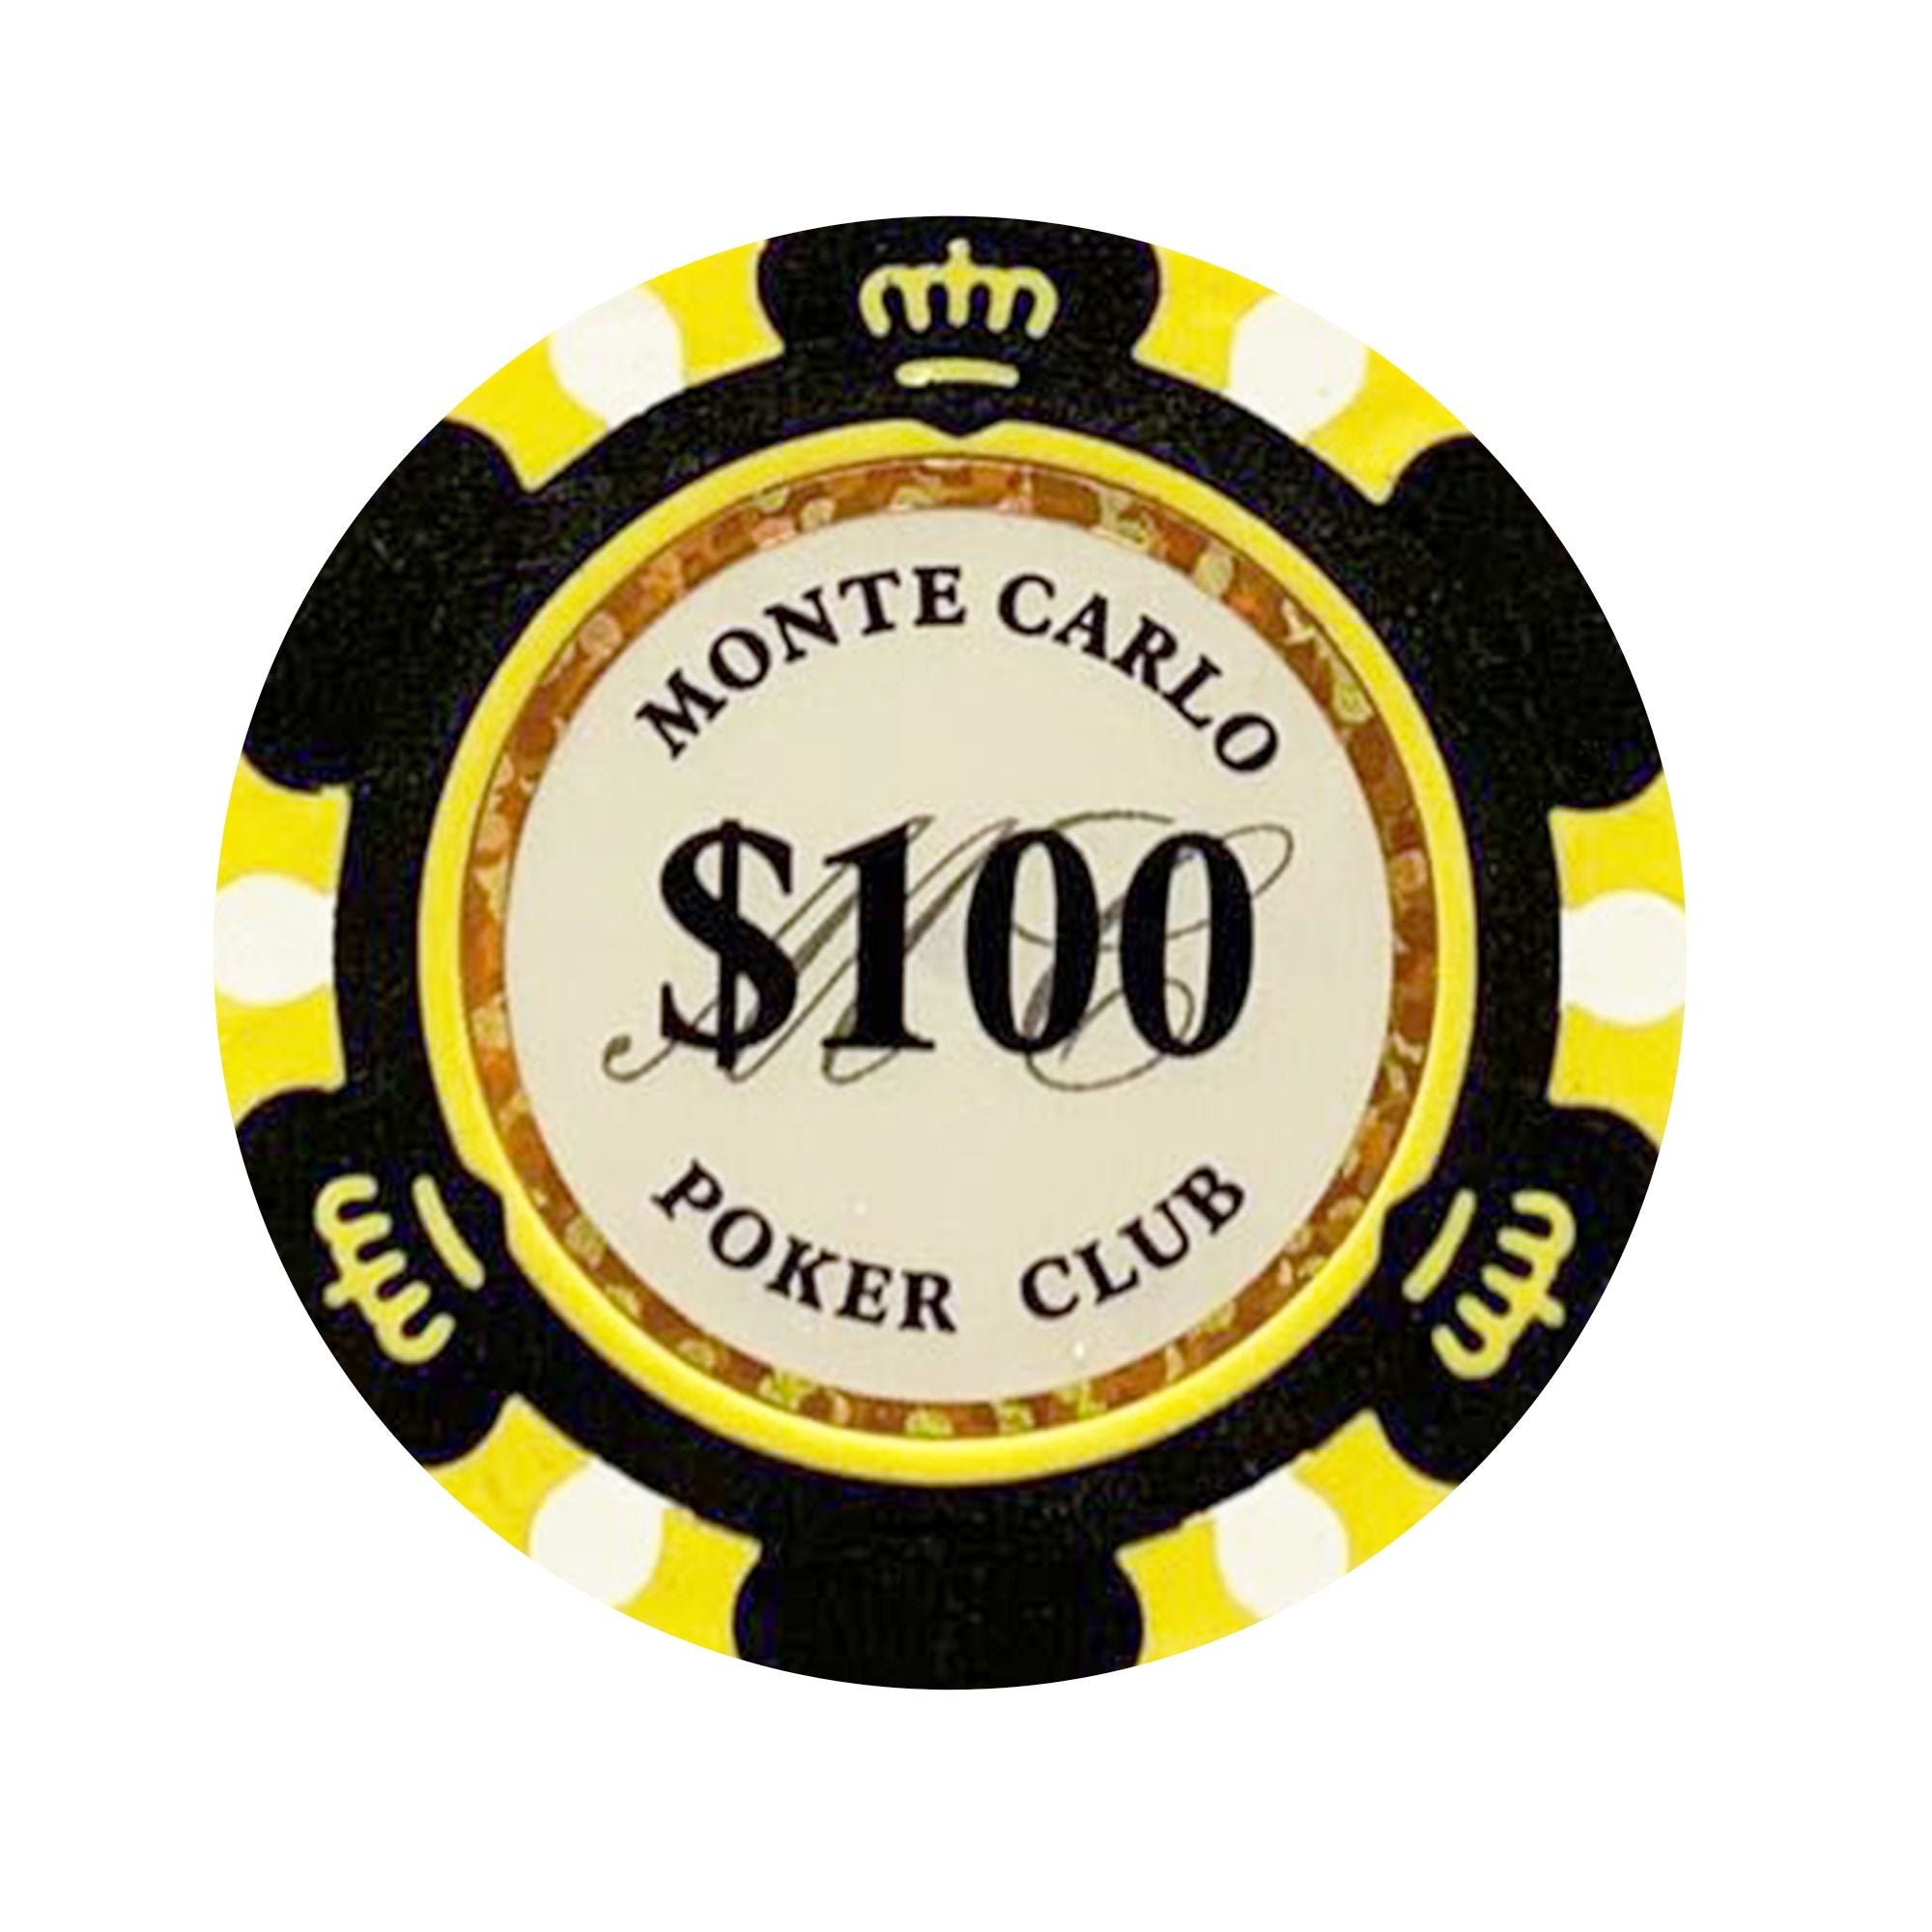 Monte Carlo Full Range, Bestselling 14g Poker Chip Range